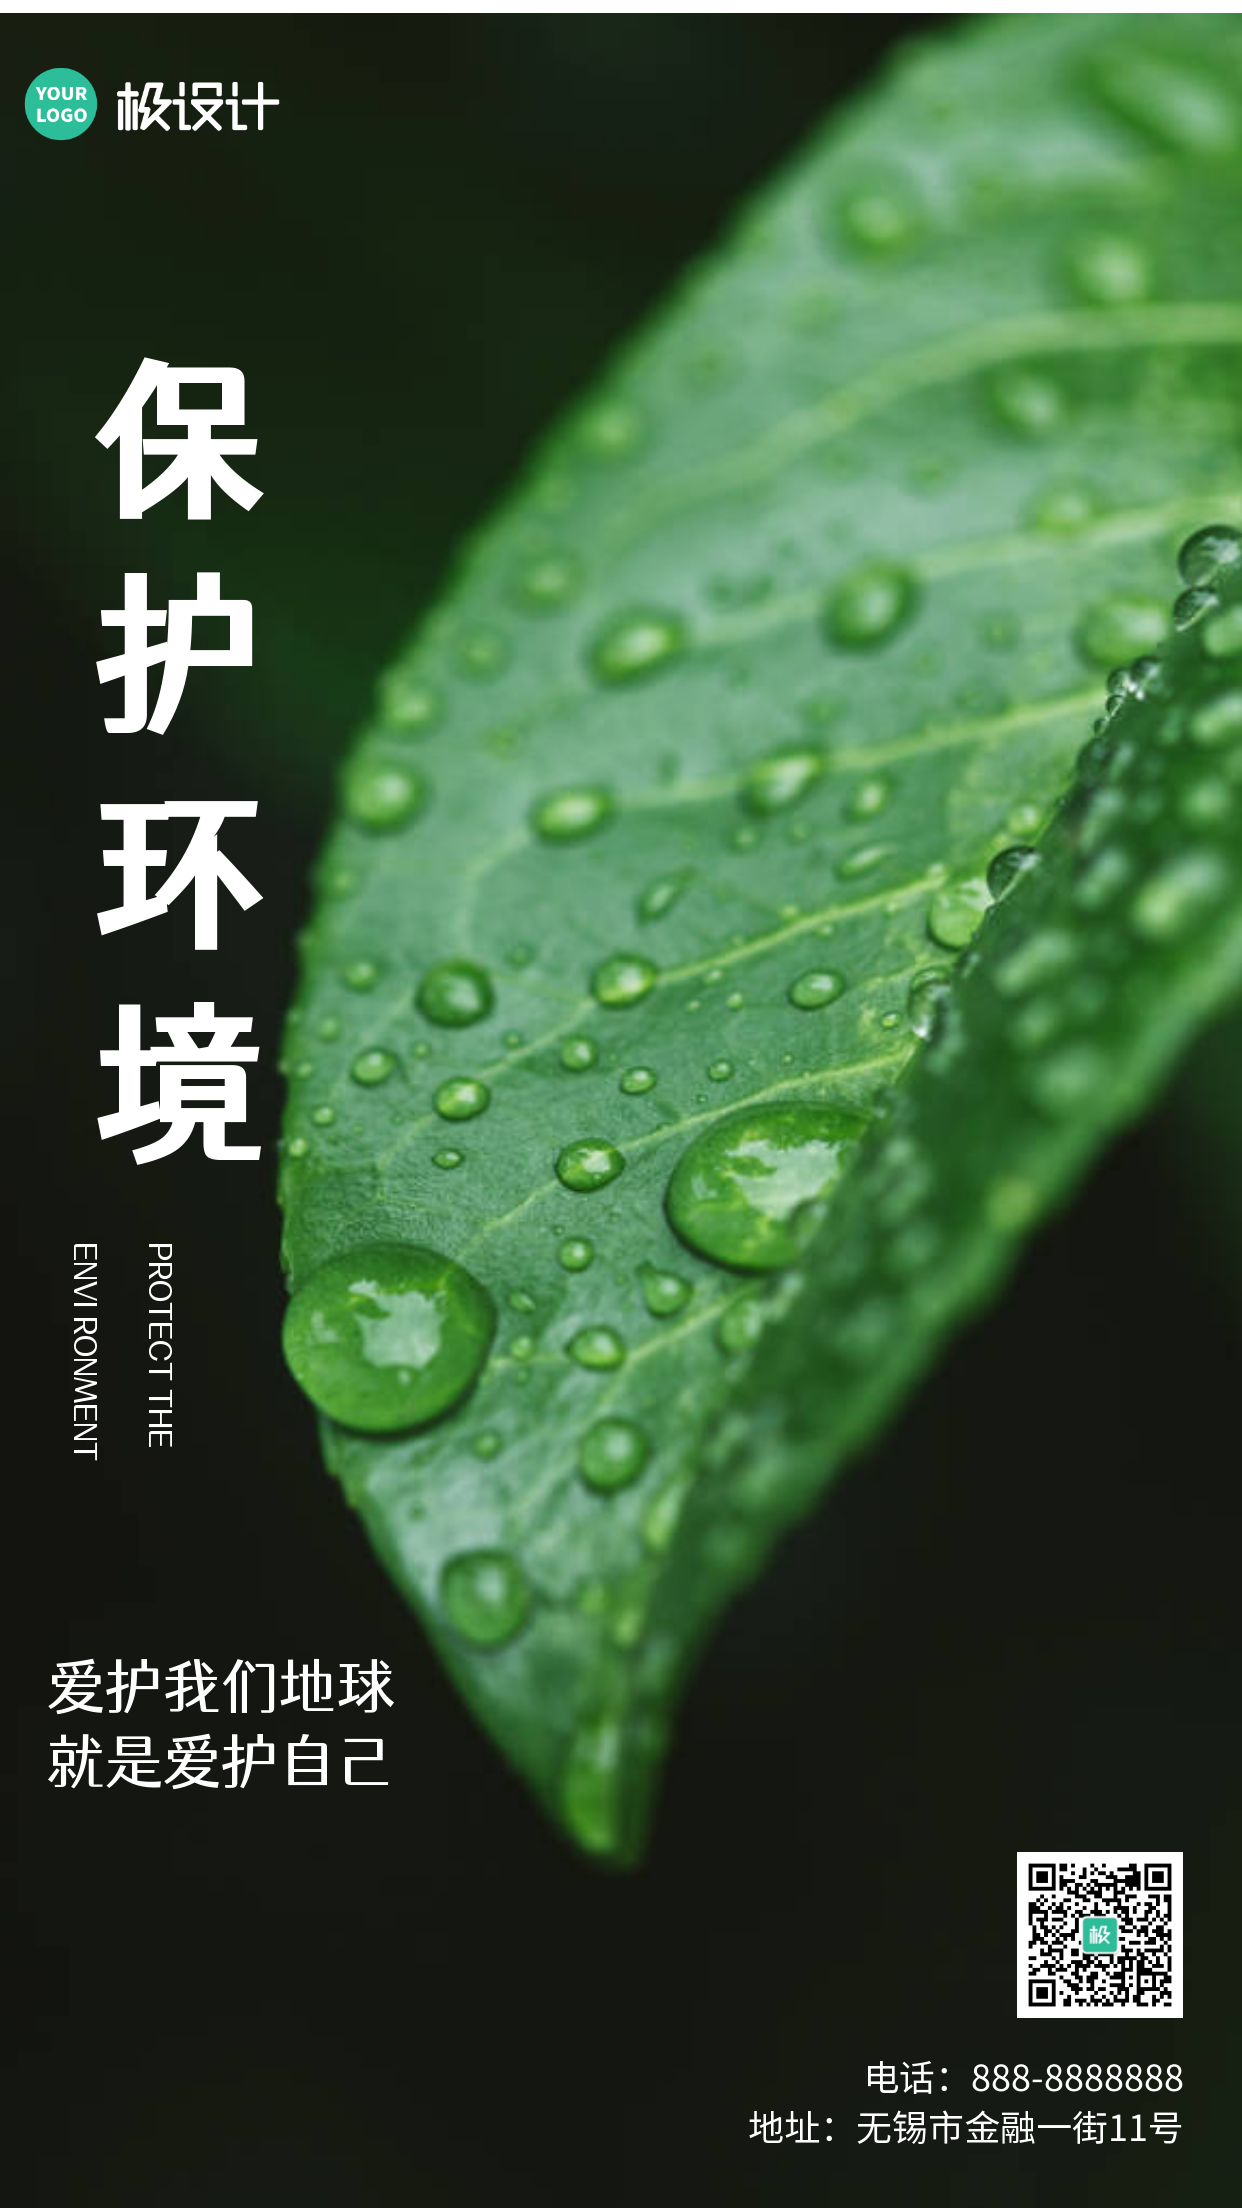 简约风格雨水节气公益环保宣传手机海报